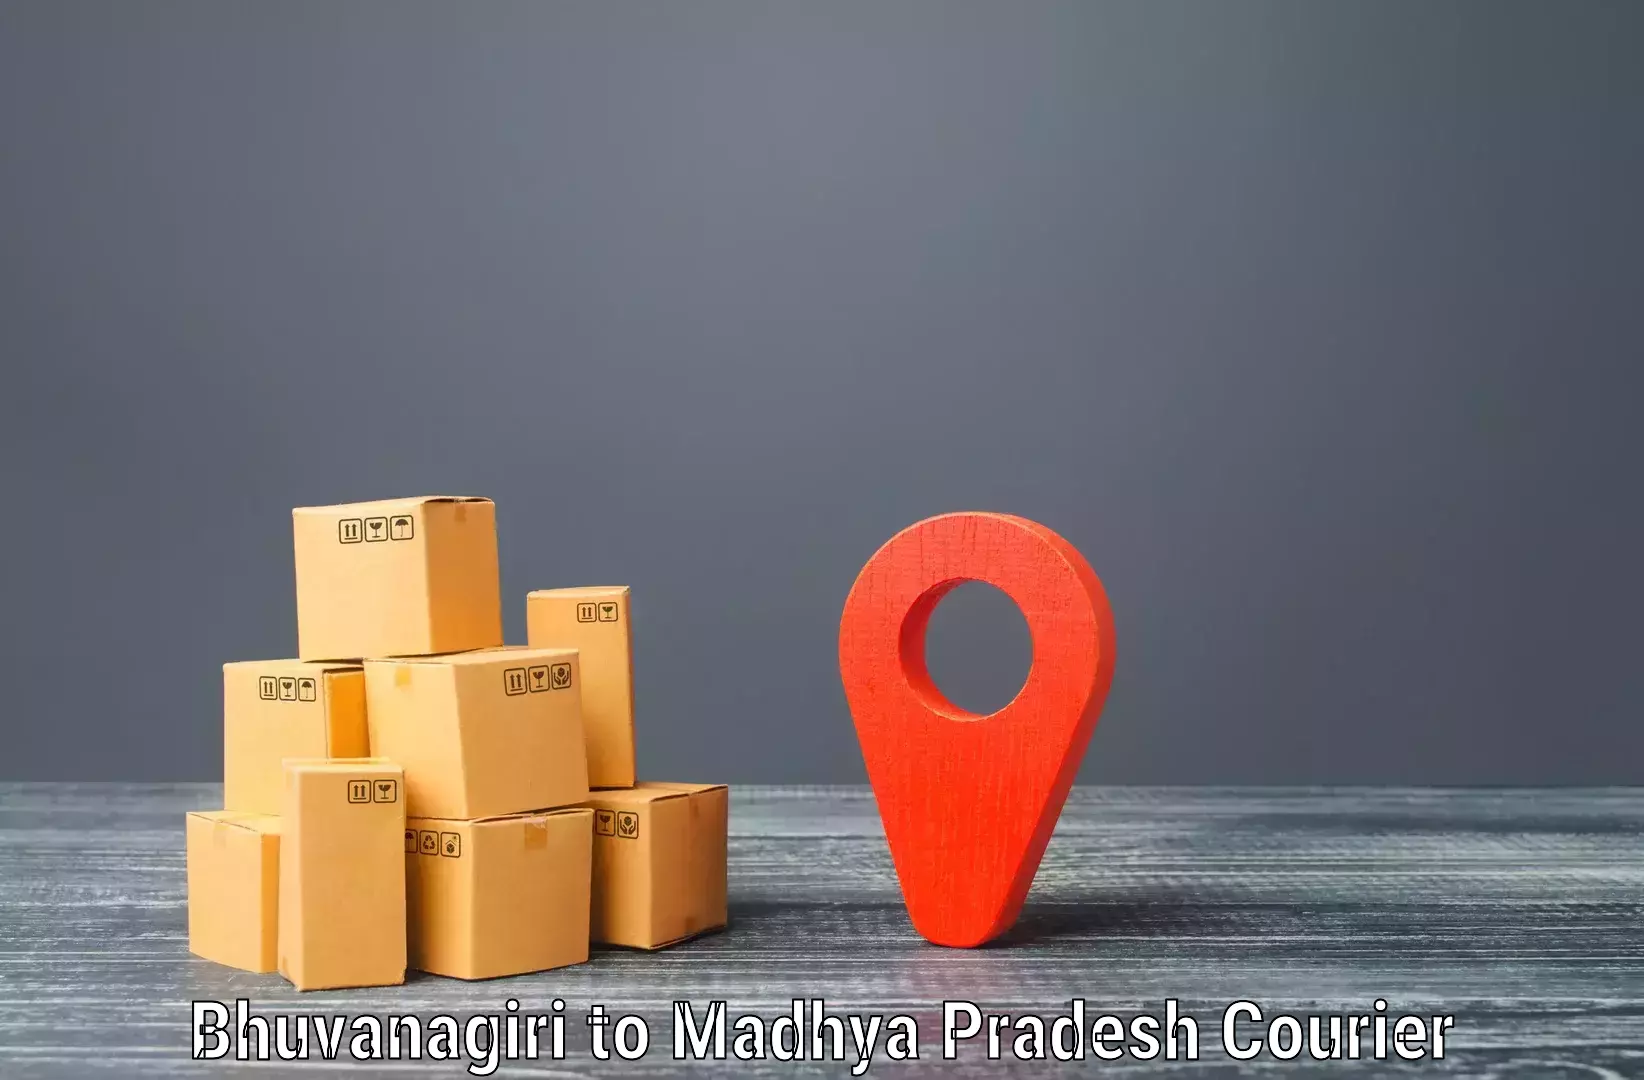 Global courier networks Bhuvanagiri to Jatara